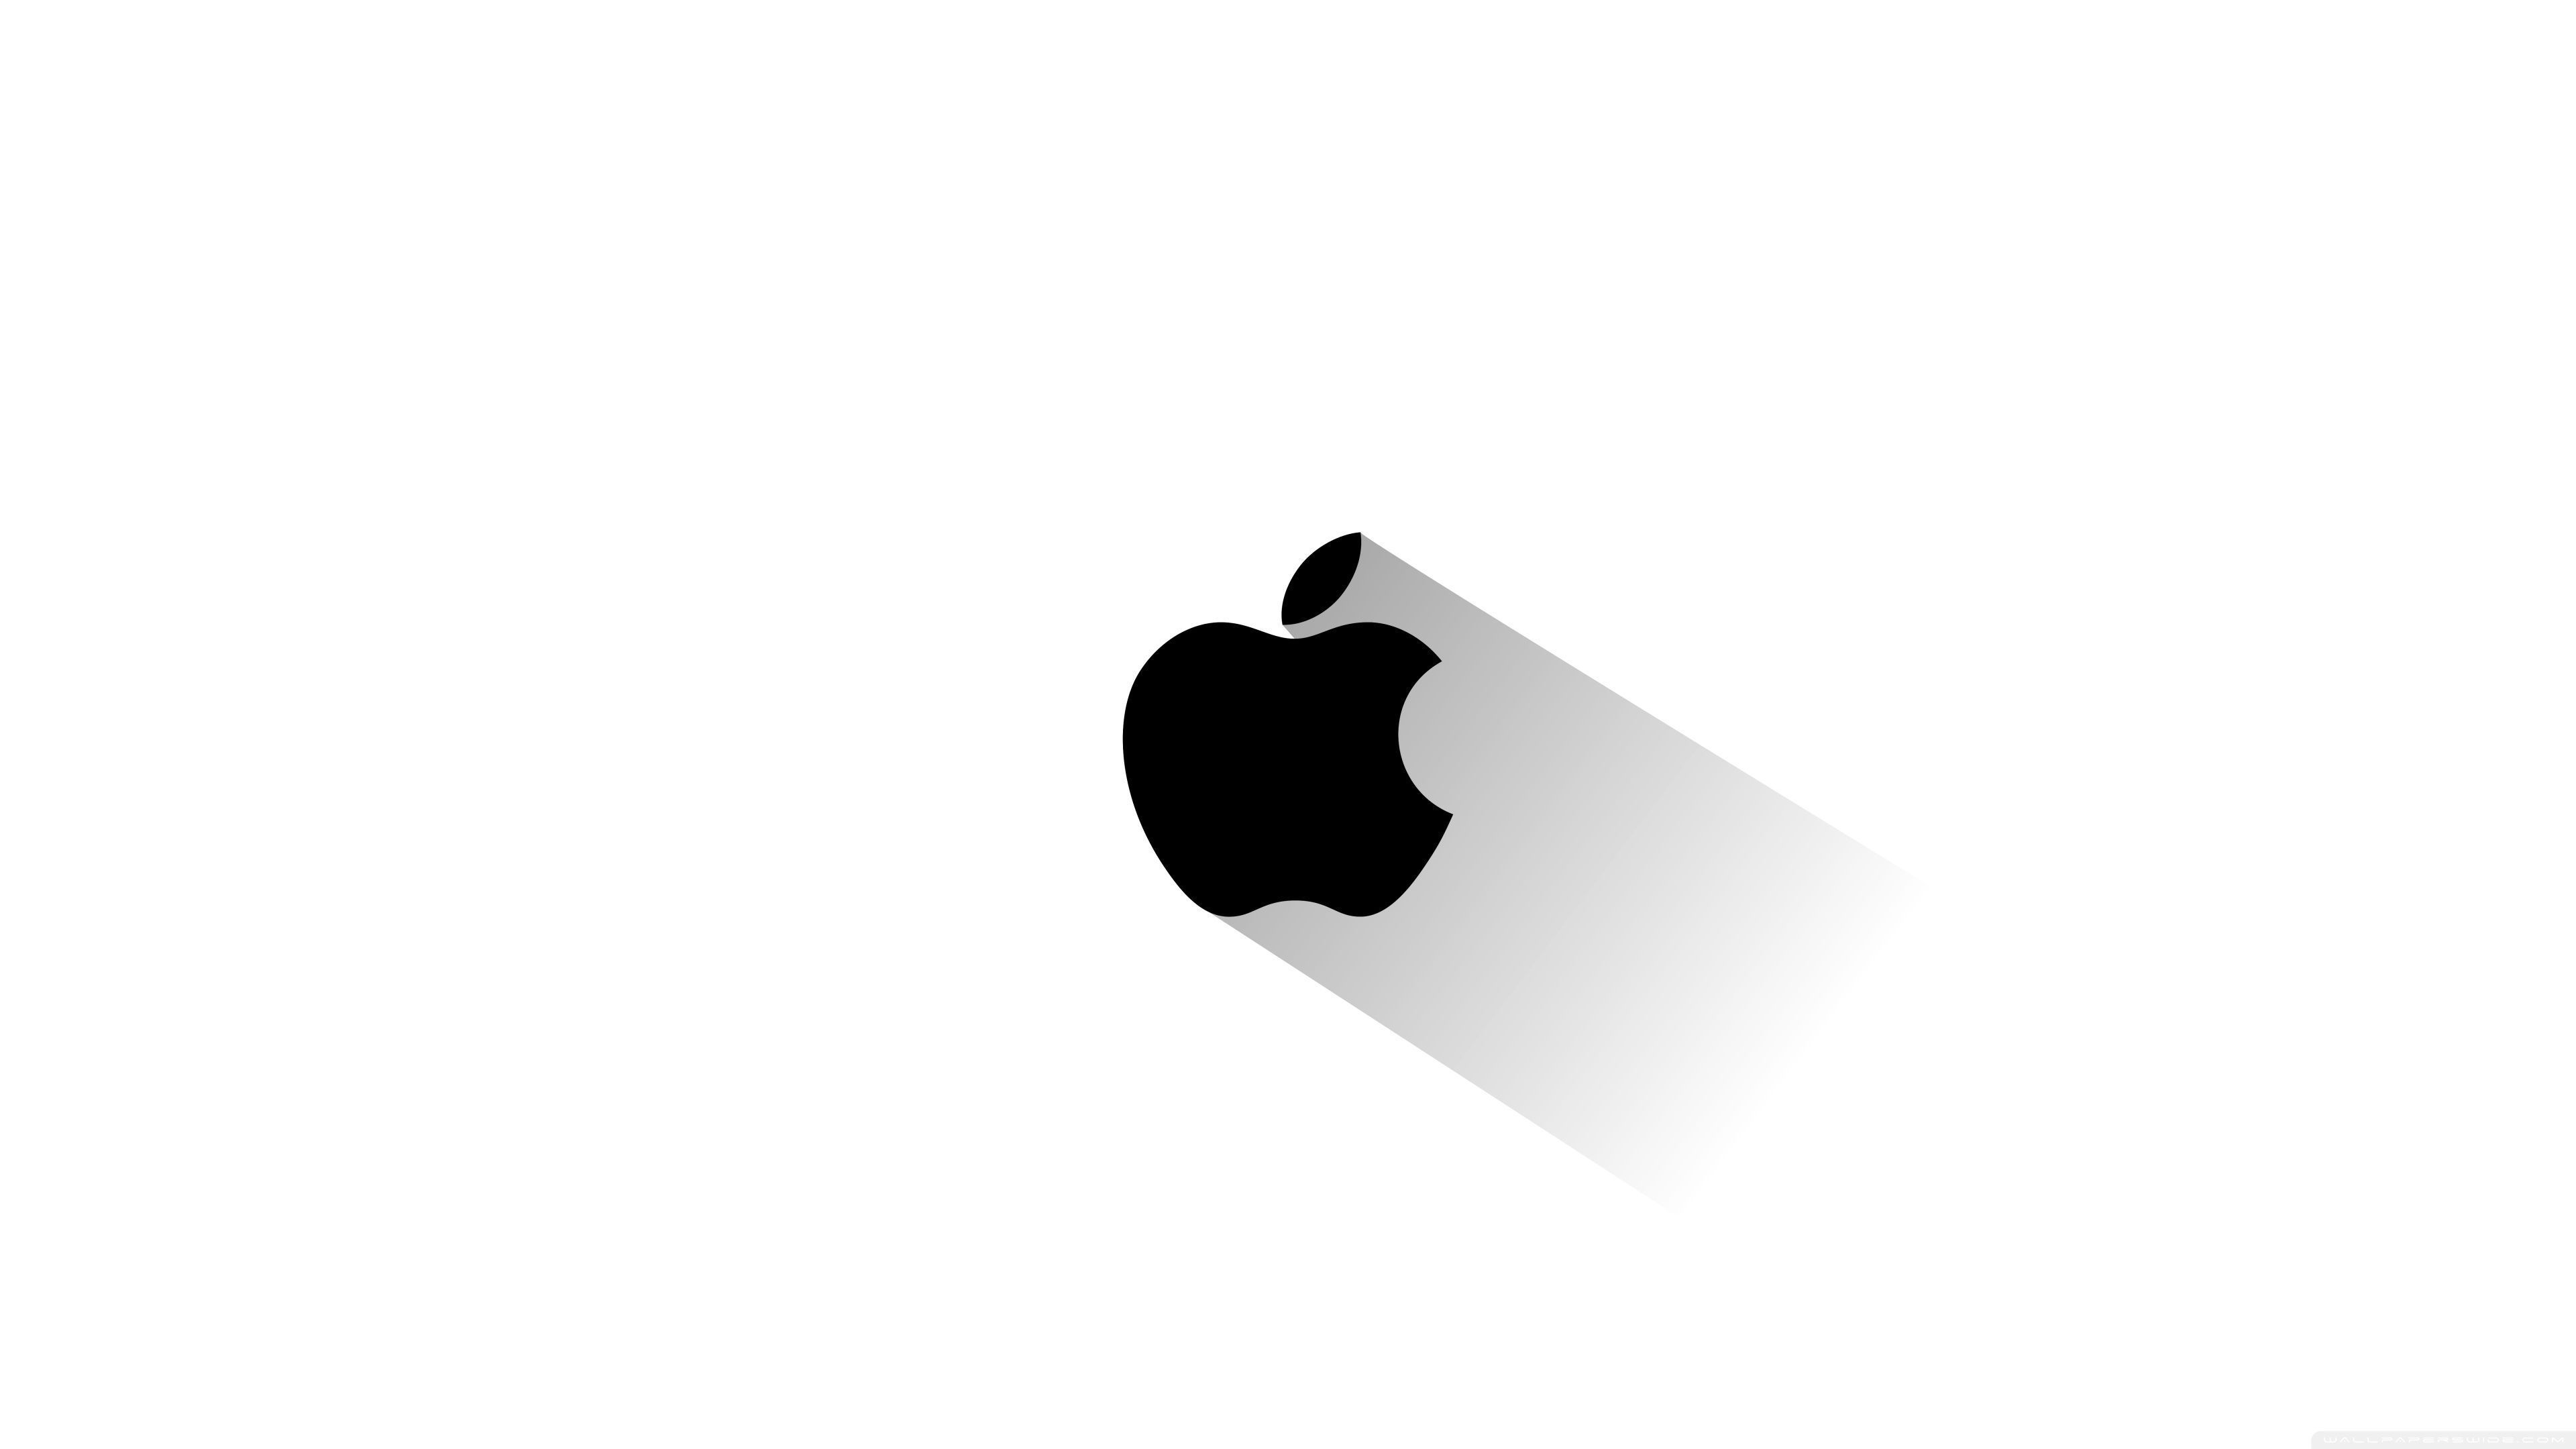 Apple 4K Ultra HD Wallpaper Free Apple 4K Ultra HD Background - Apple logo, Apple logo wallpaper, iPhone logo